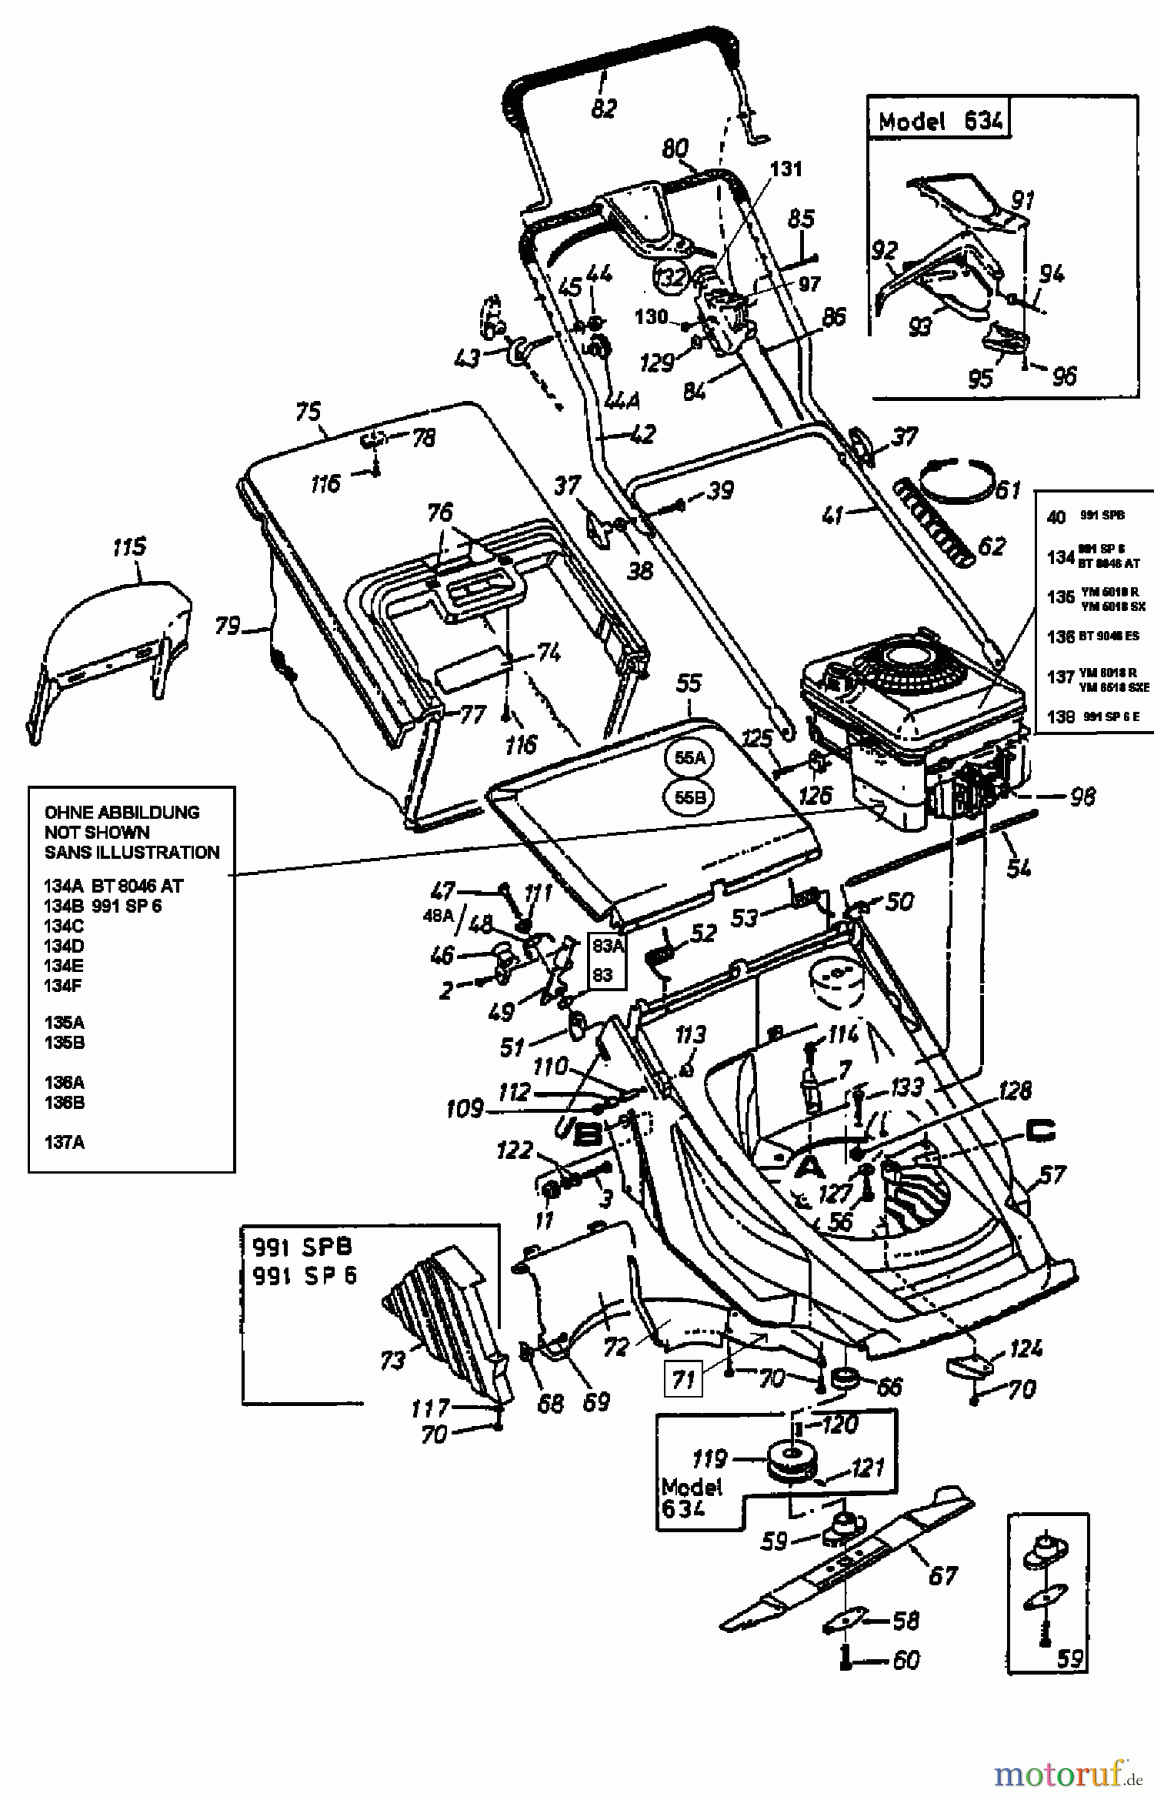  Lawnflite Motormäher mit Antrieb 991 SP 6 12B-658C611  (1999) Grundgerät